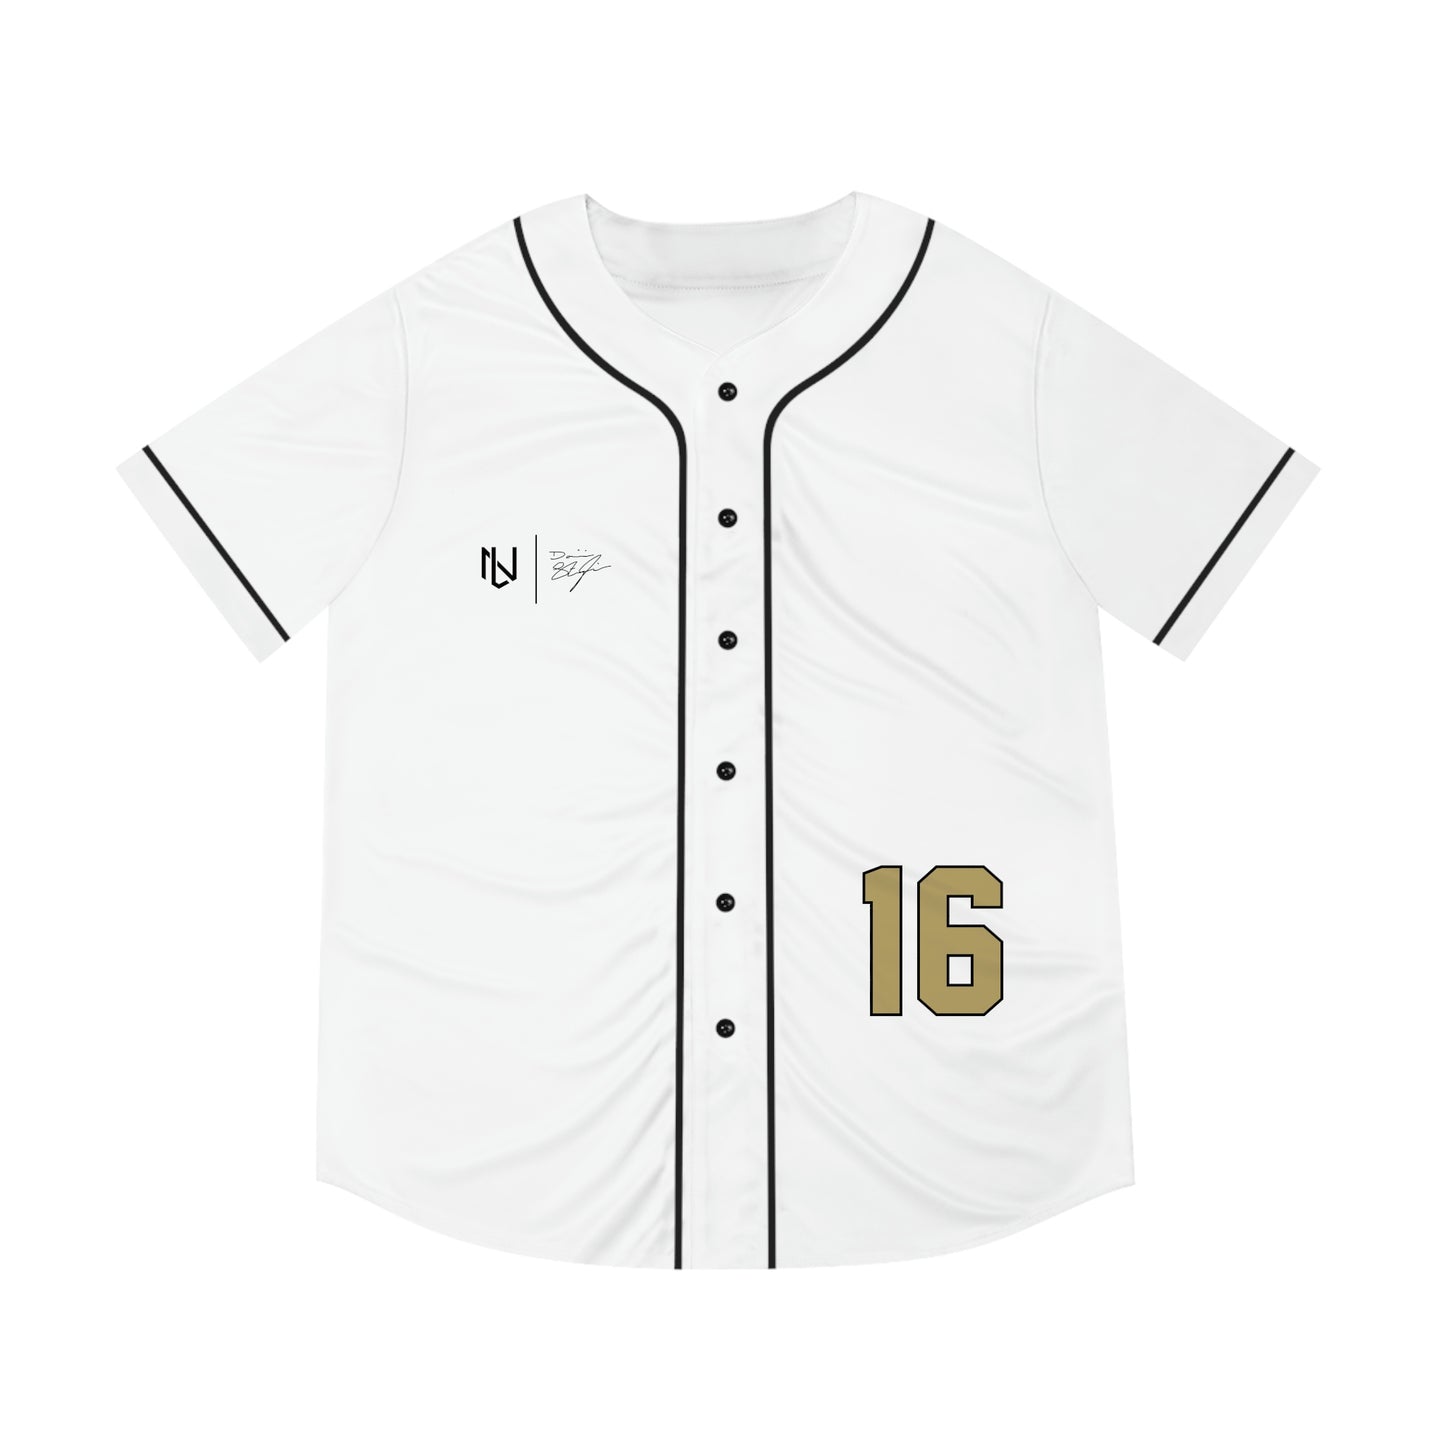 Dominic Stagliano Baseball Jersey (White)